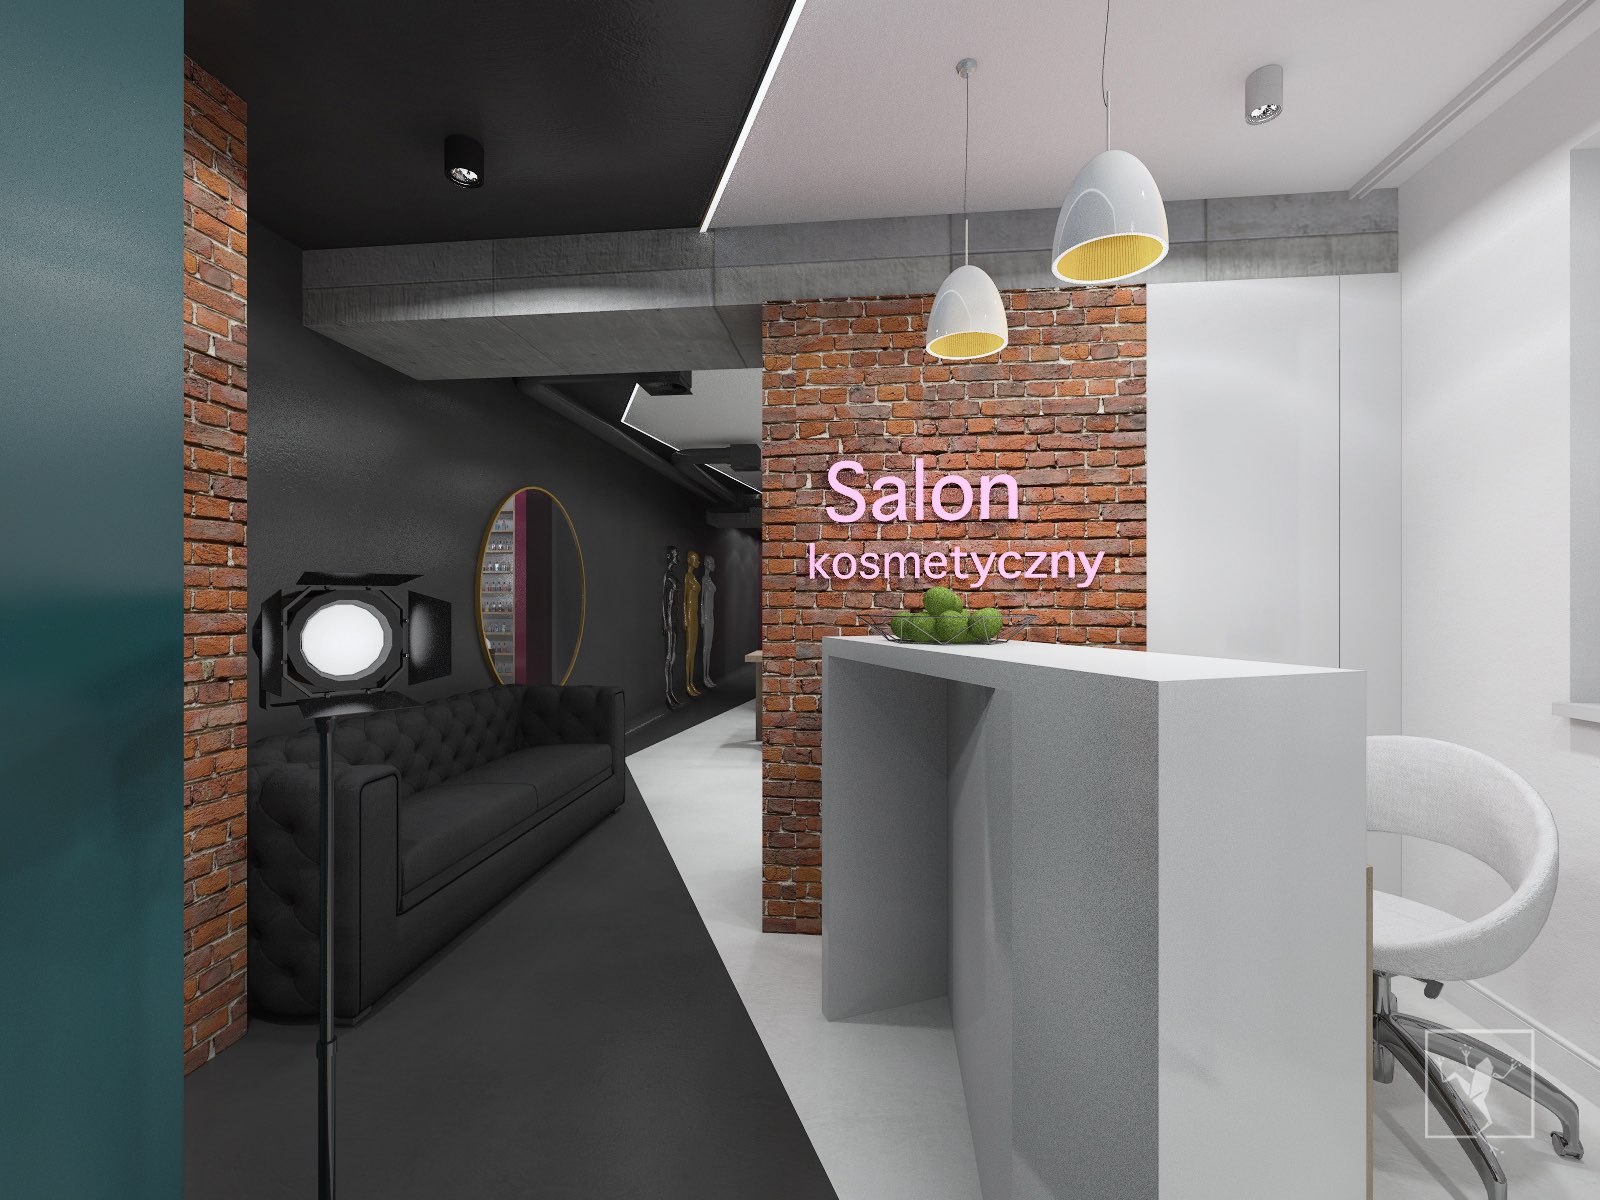 Salon Kosmetyczny w Kielcach | Frog Studio - projektowanie wnętrz